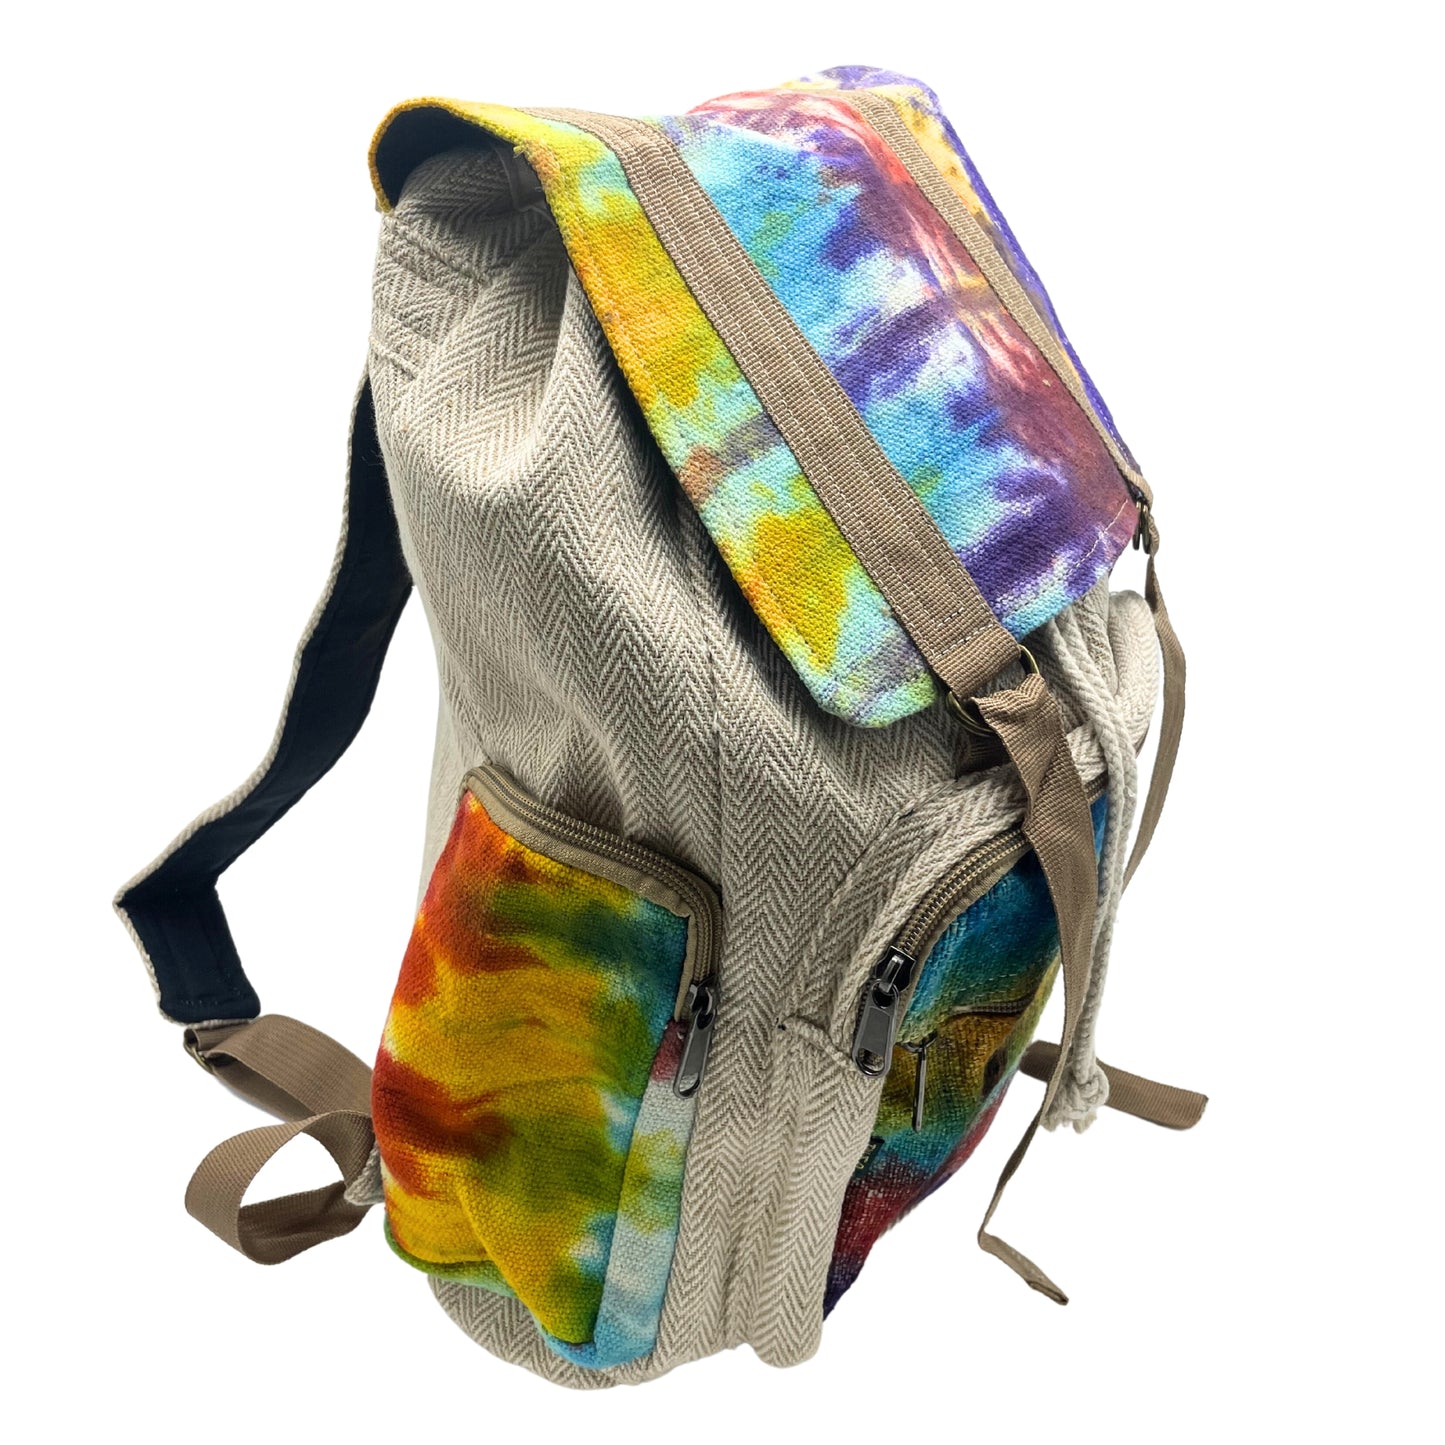 Tie Dye Hemp Large Square Backpack - Cosmic Serenity Shop